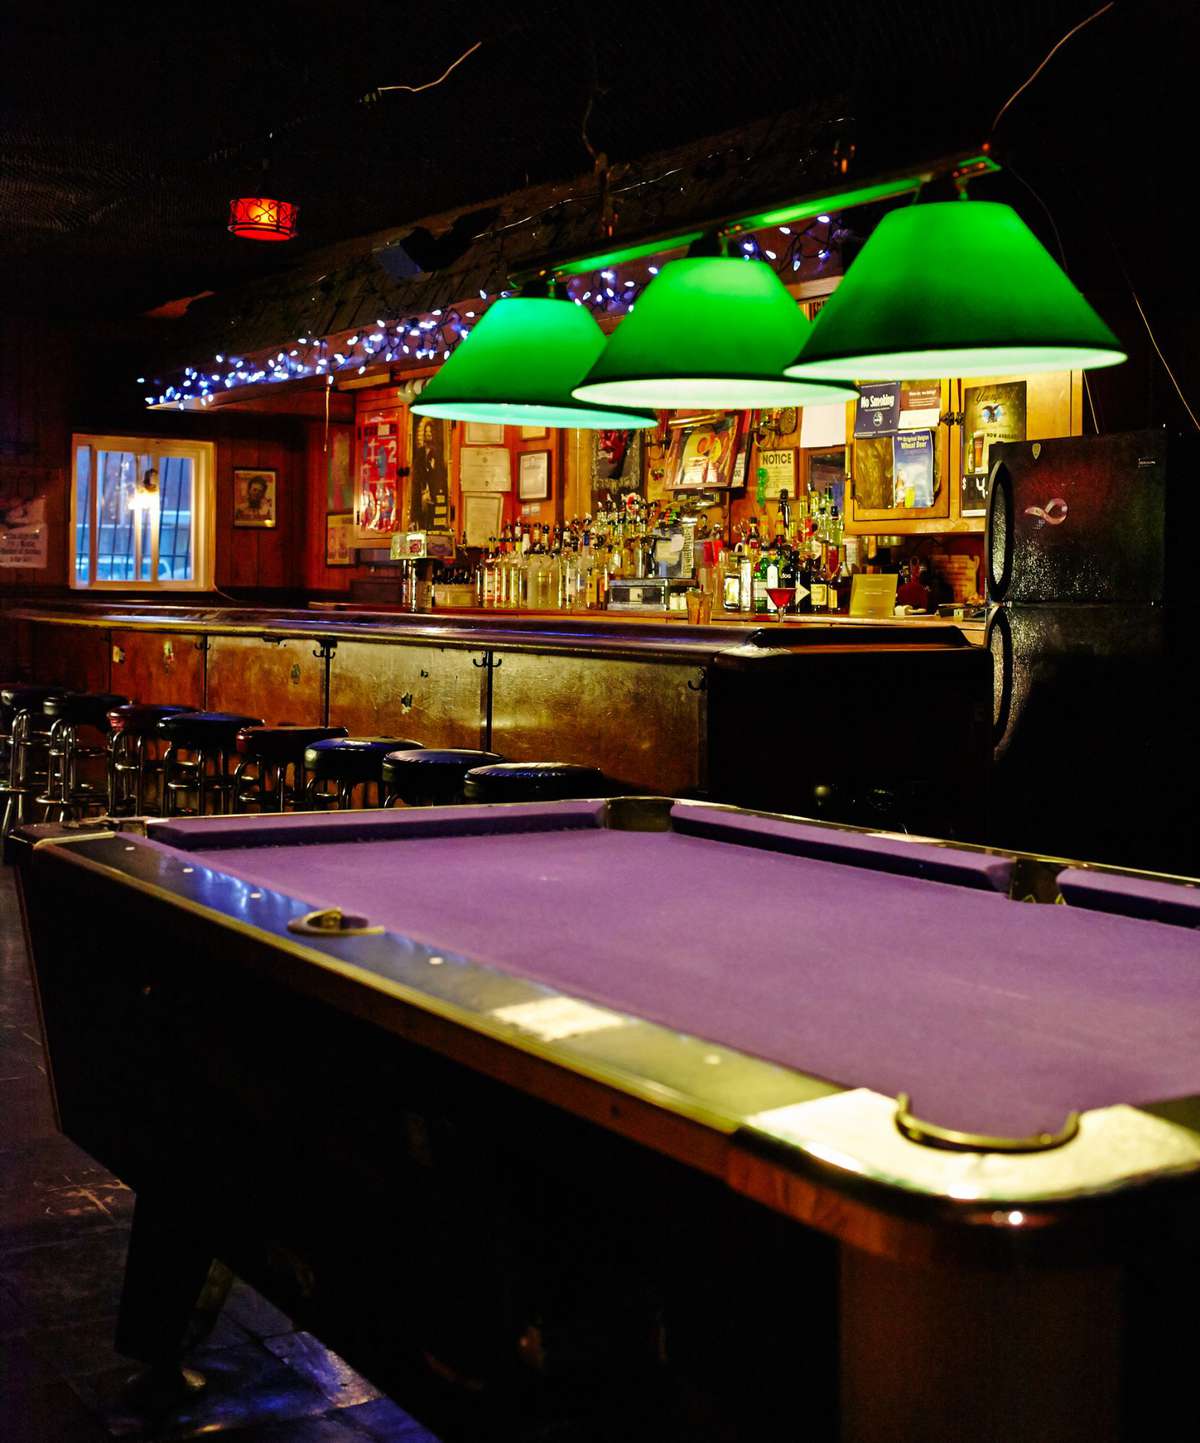 Cherry Tavern in New York City, NY